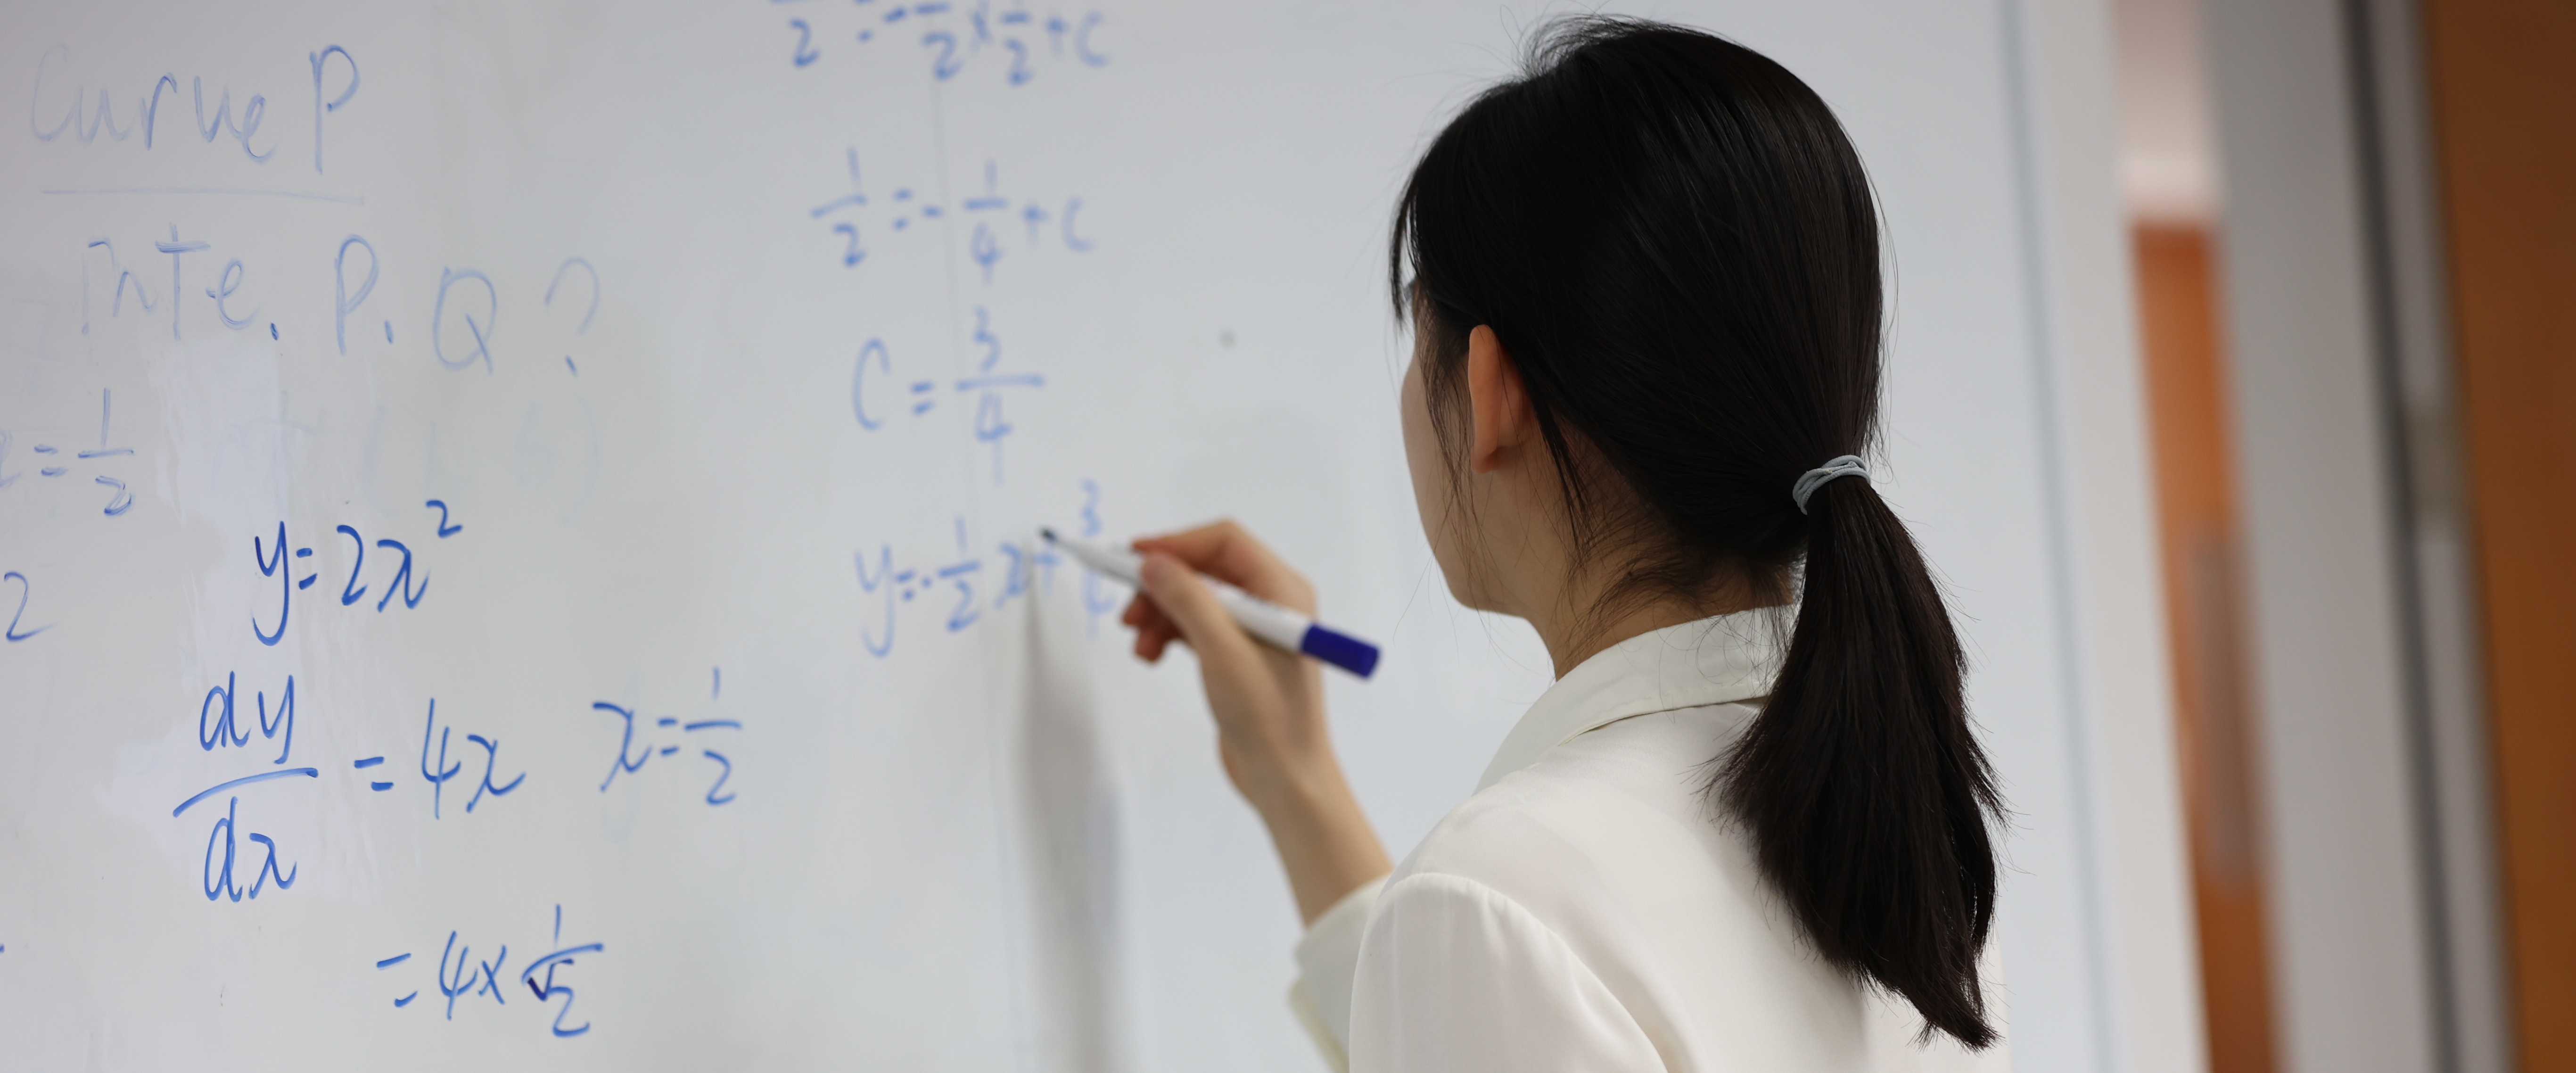 杭州双语教育模式